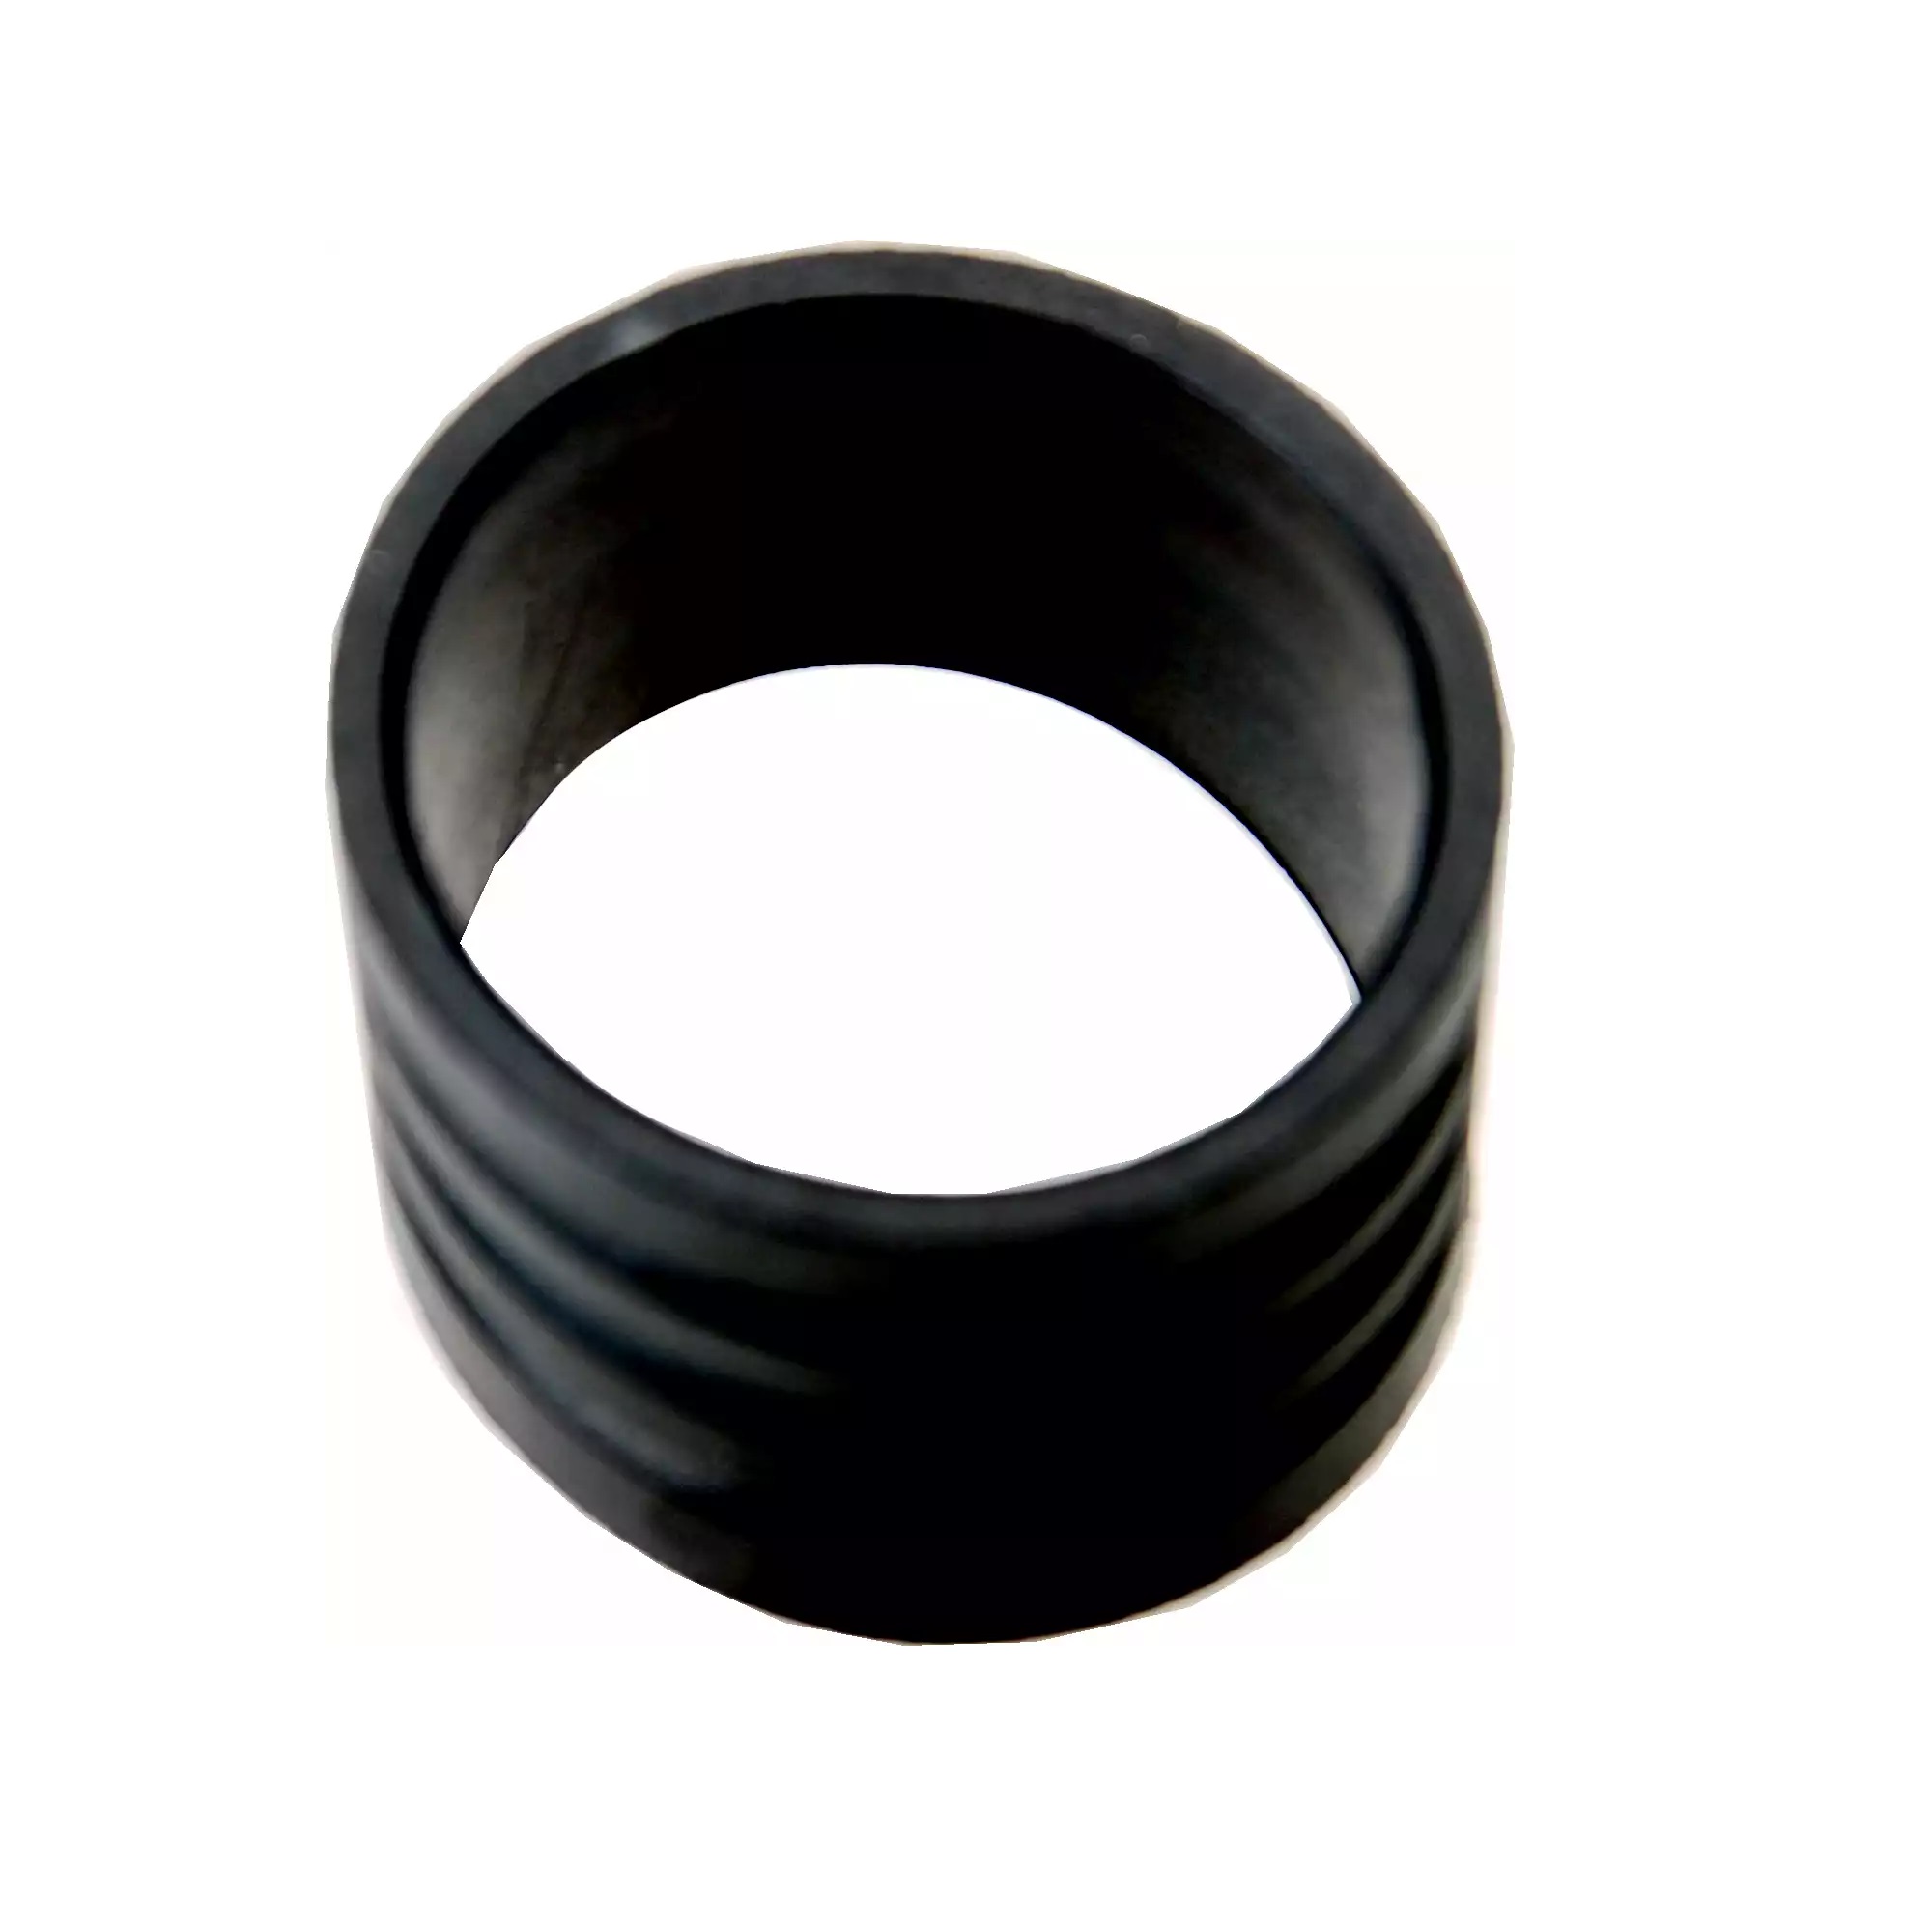 Krúžok gumový pre univerzálny adaptér na testovanie chladiaceho systému, 35 - 40 mm, BGS 8599-1